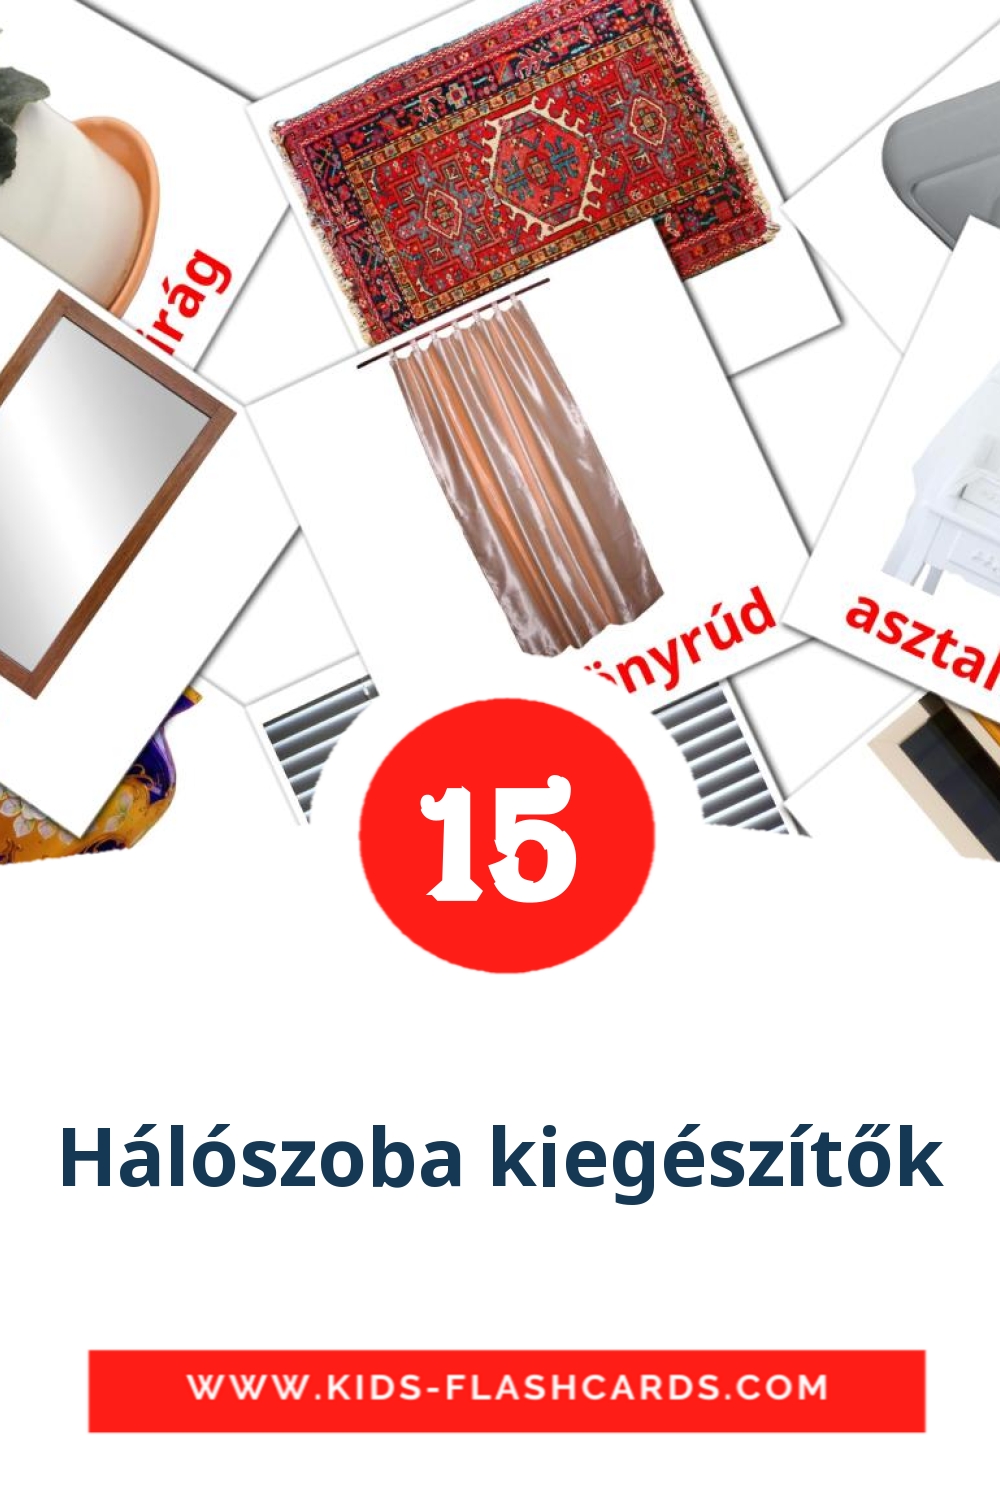 15 tarjetas didacticas de Hálószoba kiegészítők para el jardín de infancia en húngaro